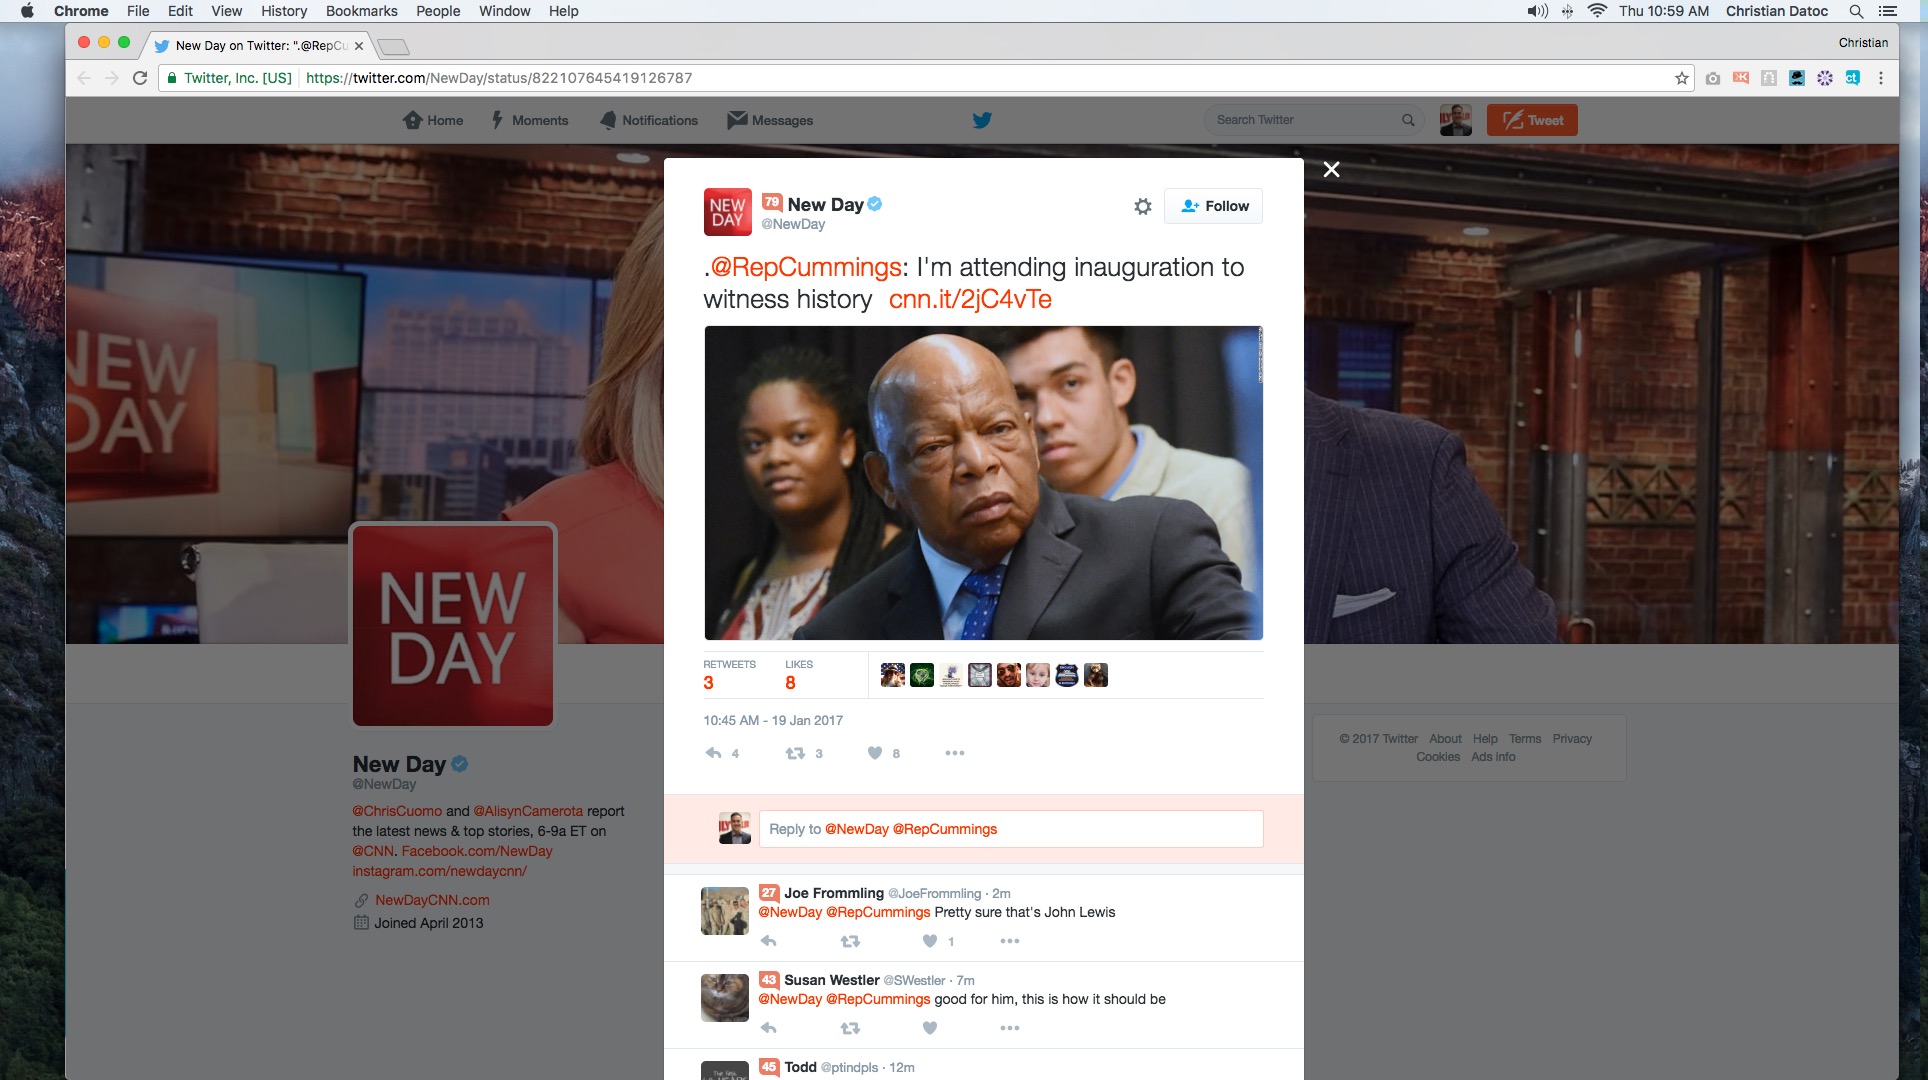 CNN New Day Twitter screenshot